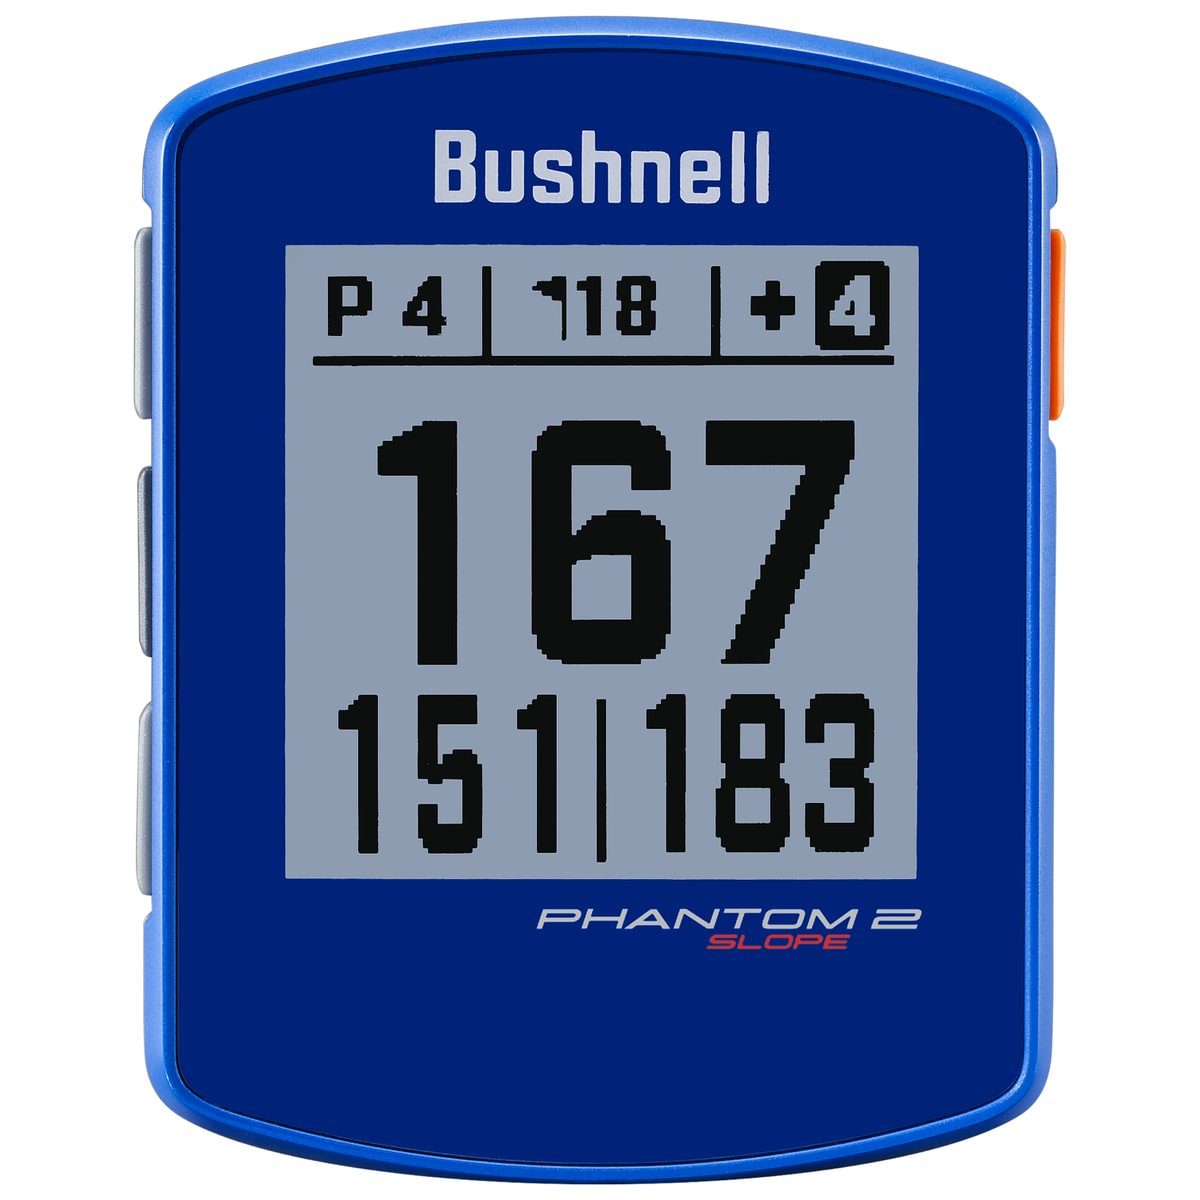 Bushnell Phantom 2 Slope Golf GPS